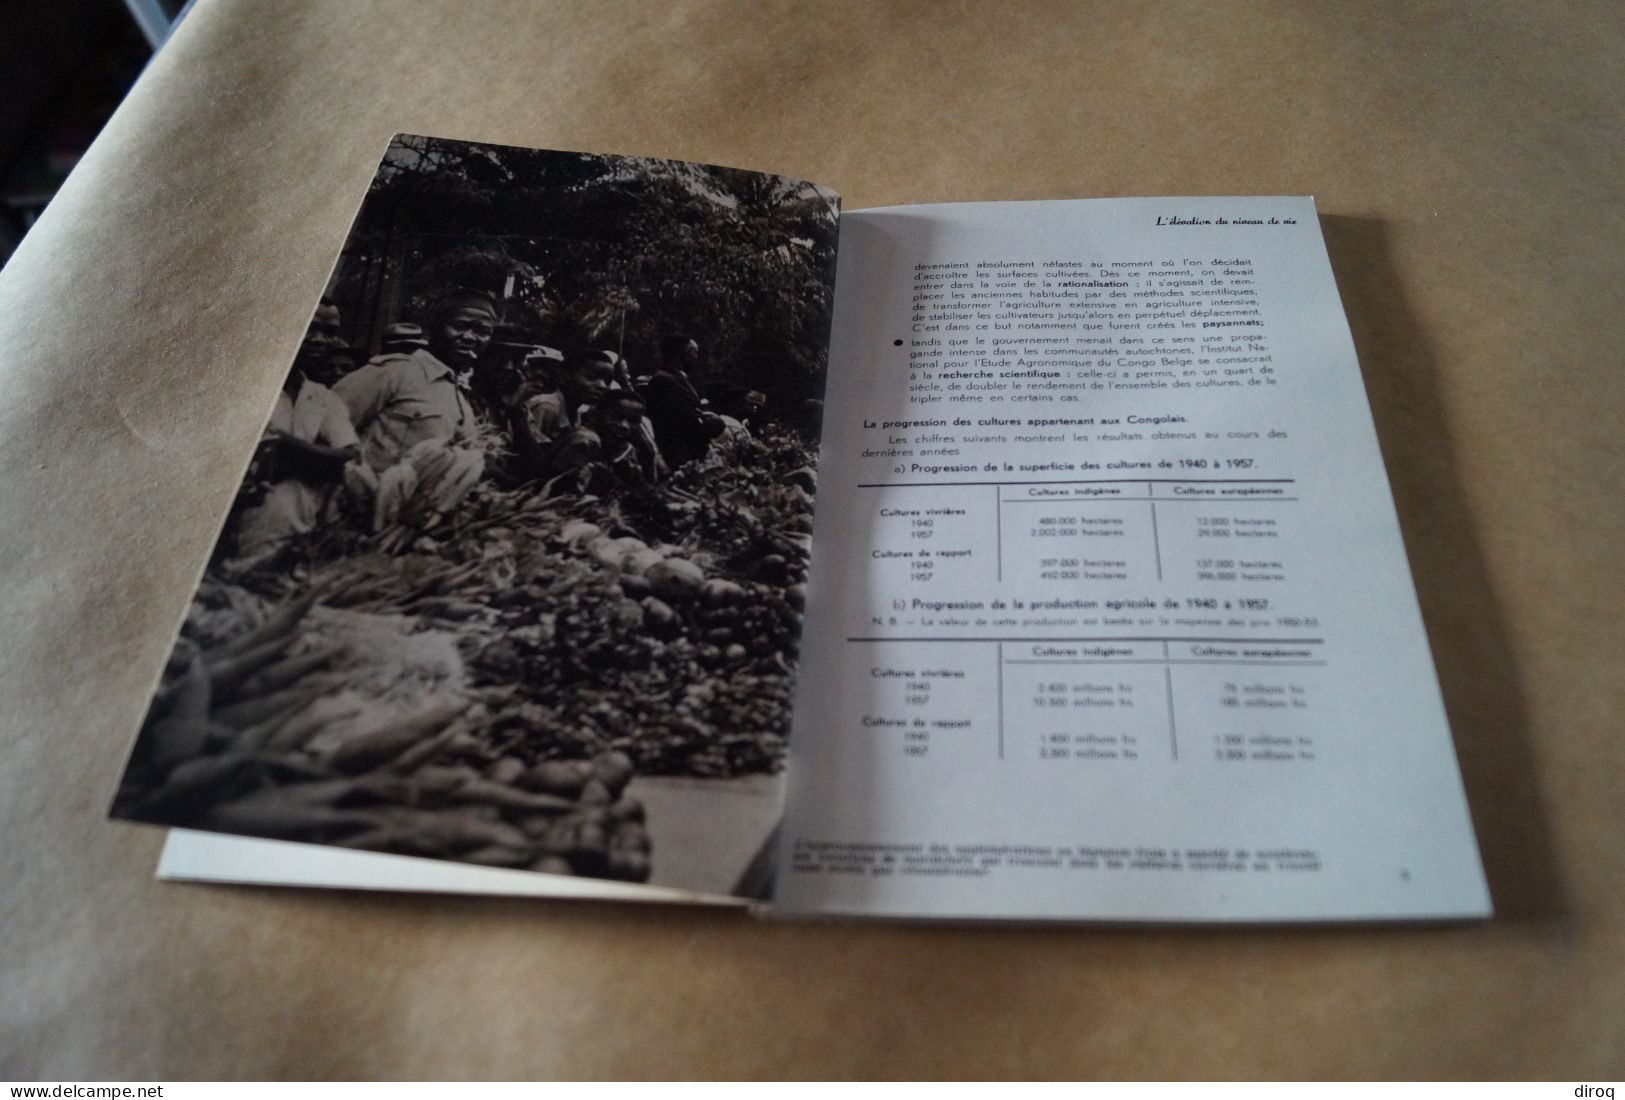 Congo Belge,1957, 13 Millions De Congolais,80 Pages,24 Cm. Sur 16 Cm. - Zonder Classificatie